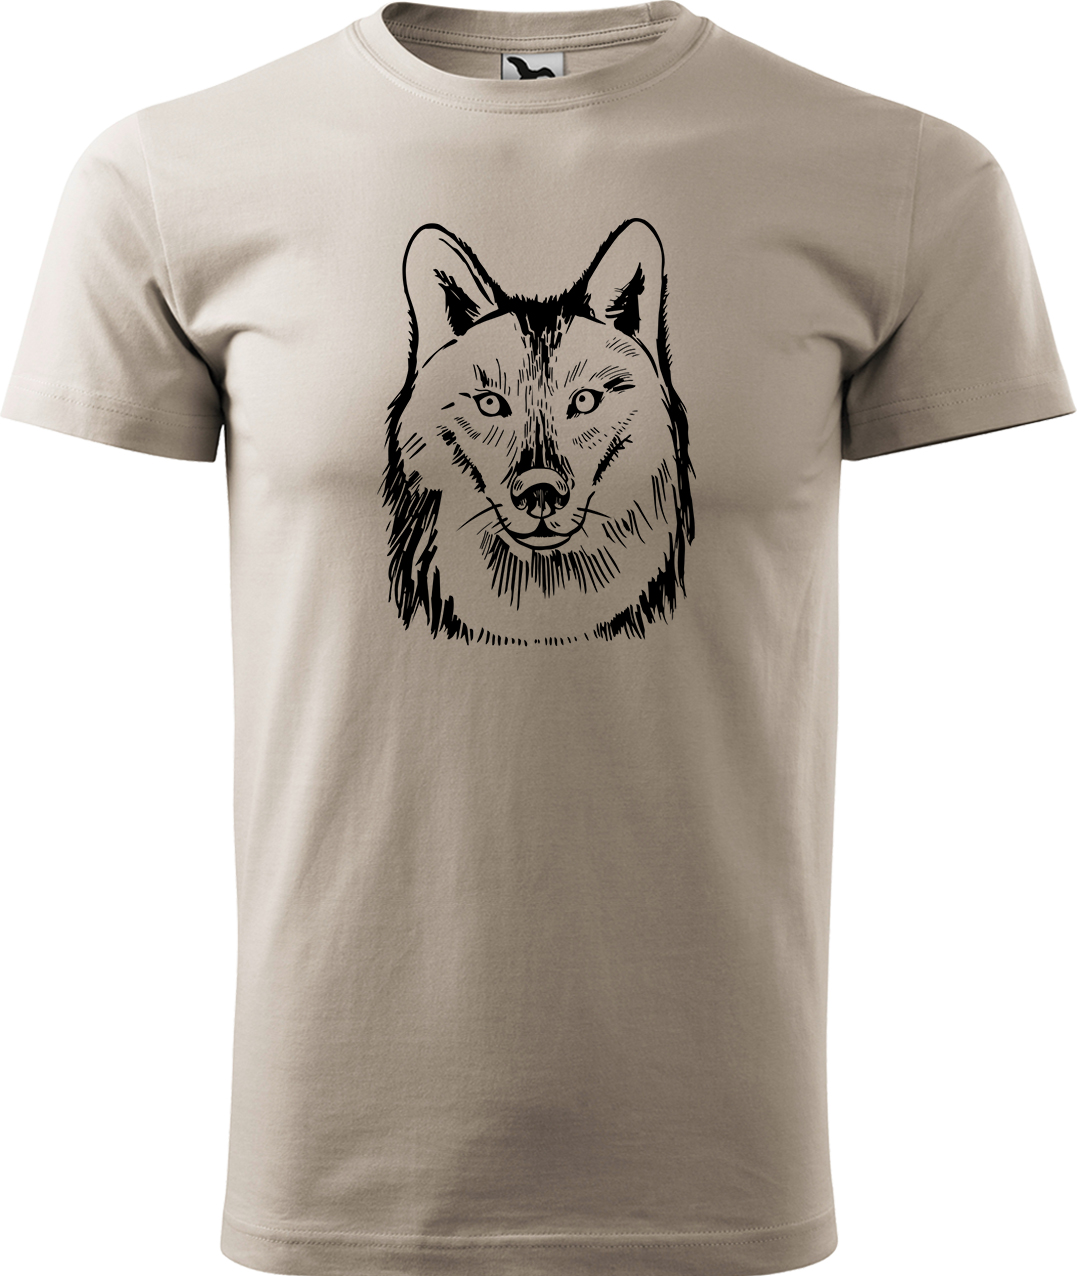 Pánské tričko s vlkem - Kresba vlka Velikost: L, Barva: Béžová (51), Střih: pánský